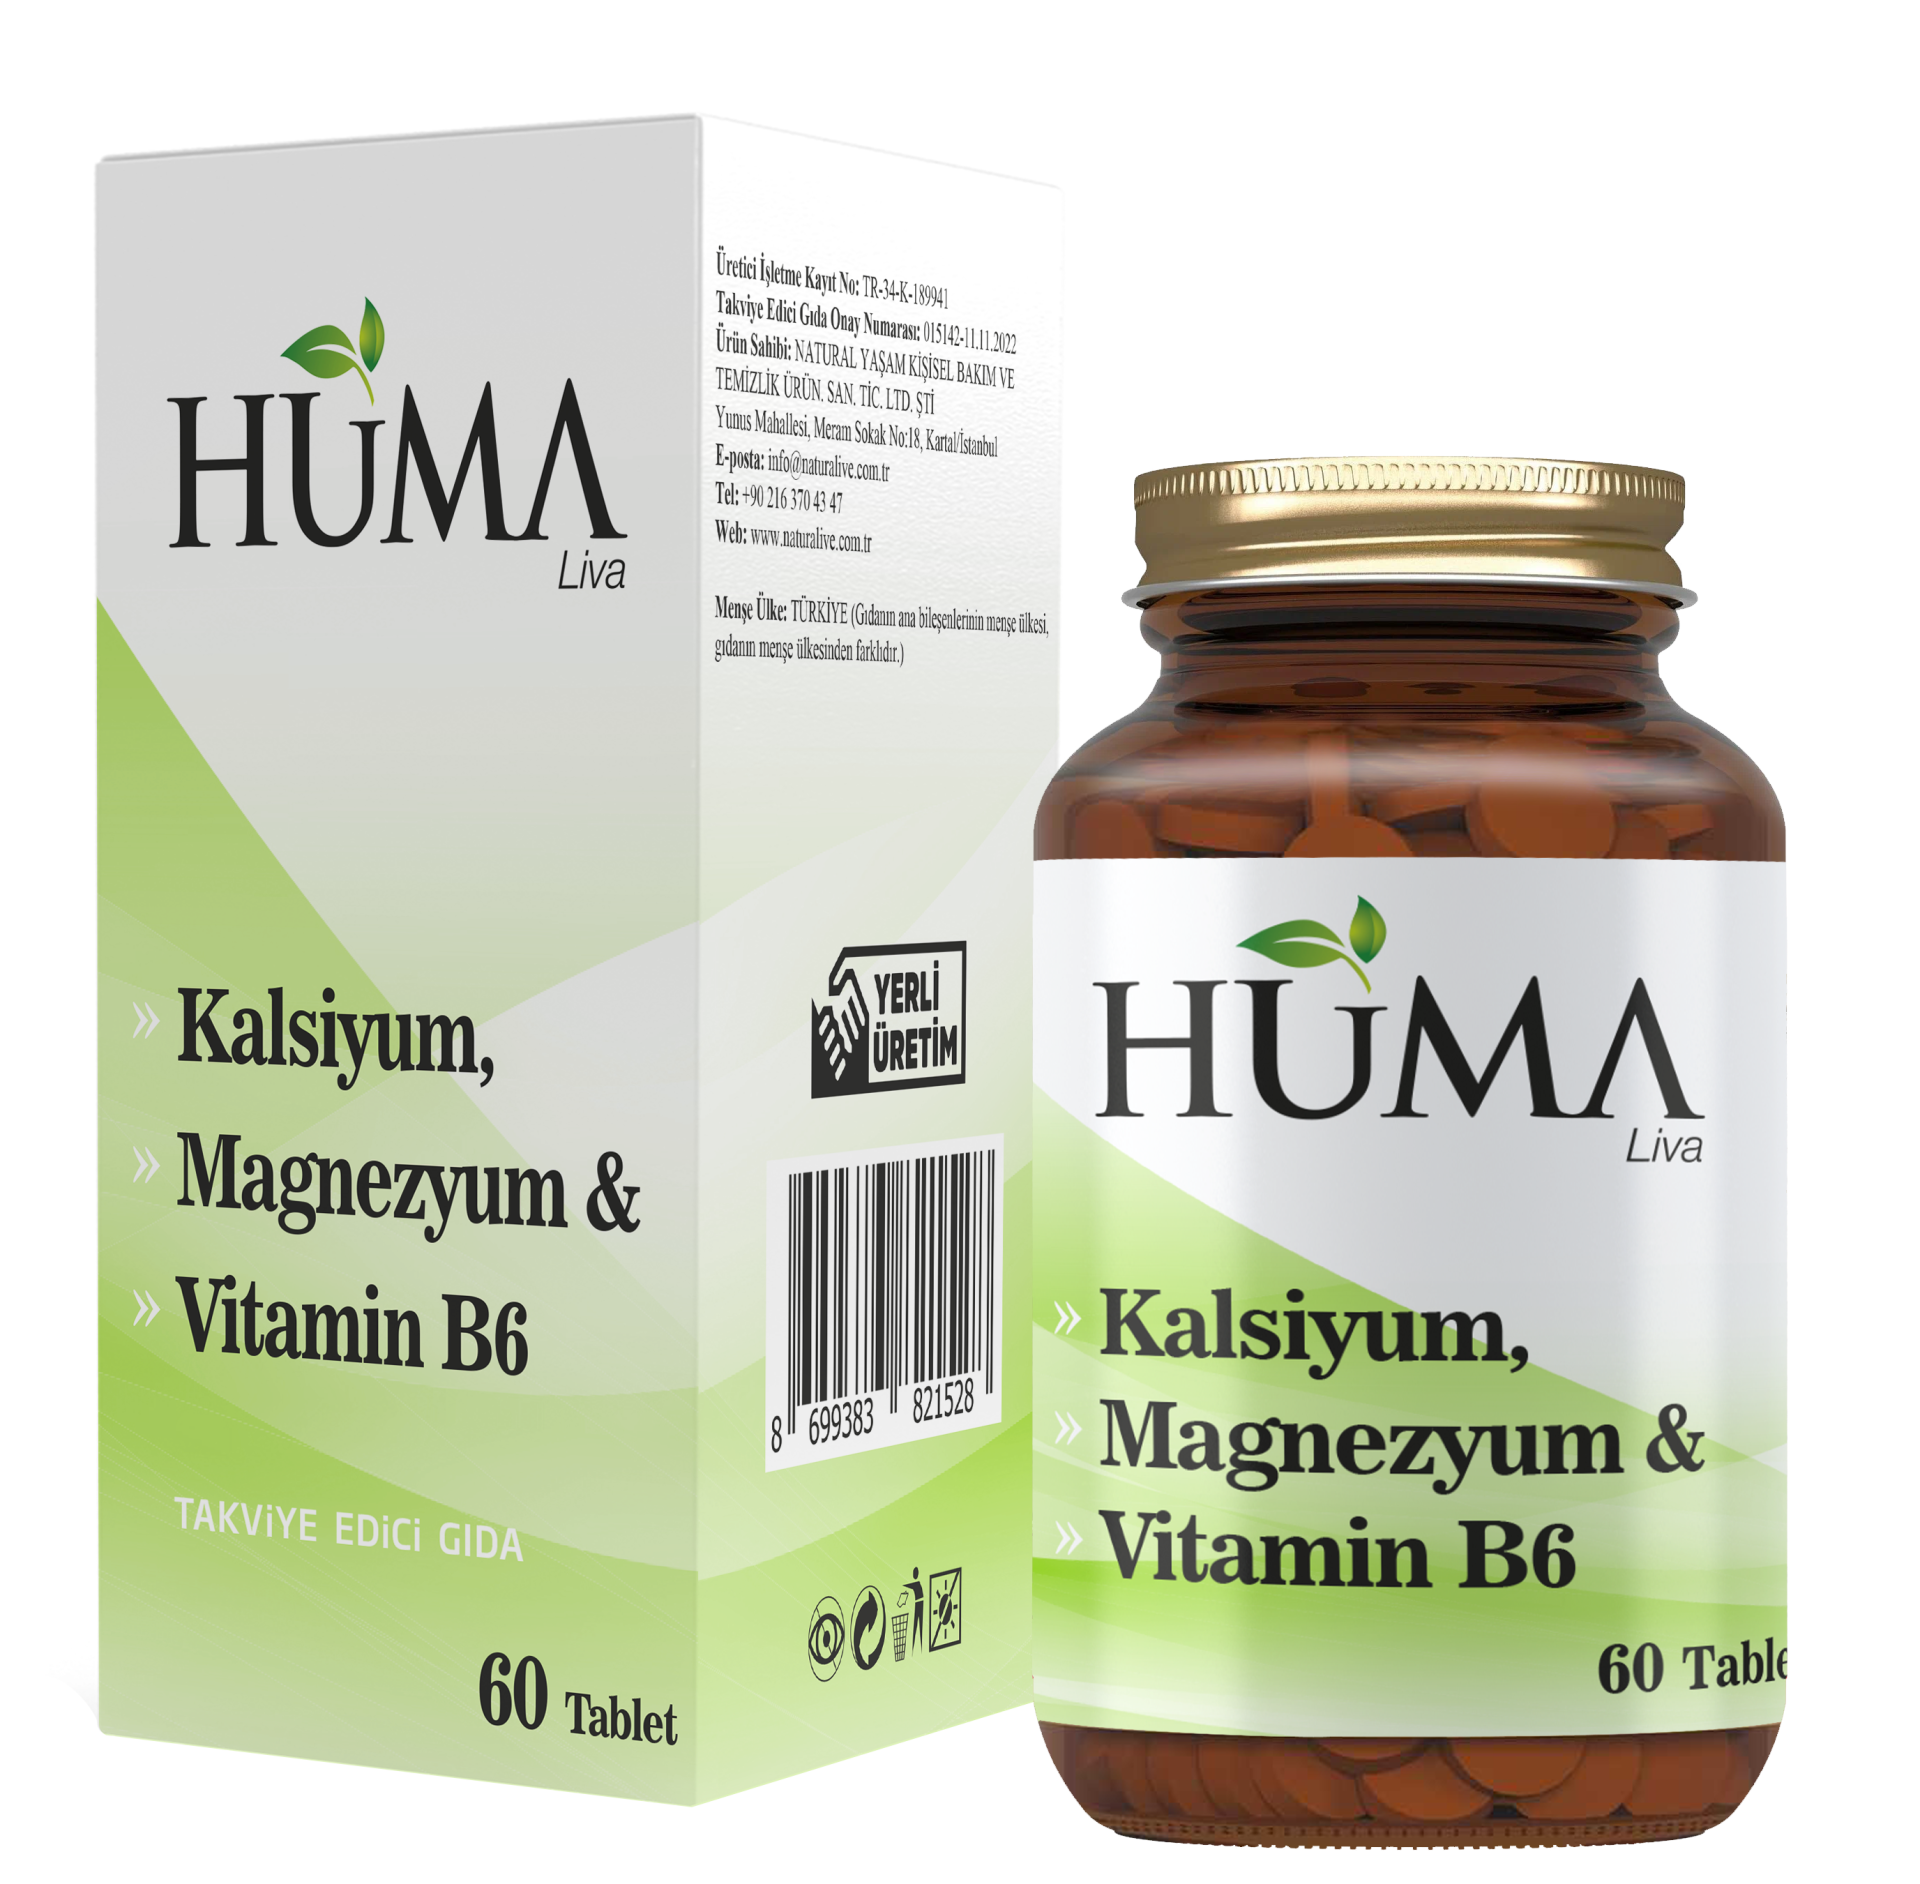 Kalsiyum, Magnezyum & Vitamin B6